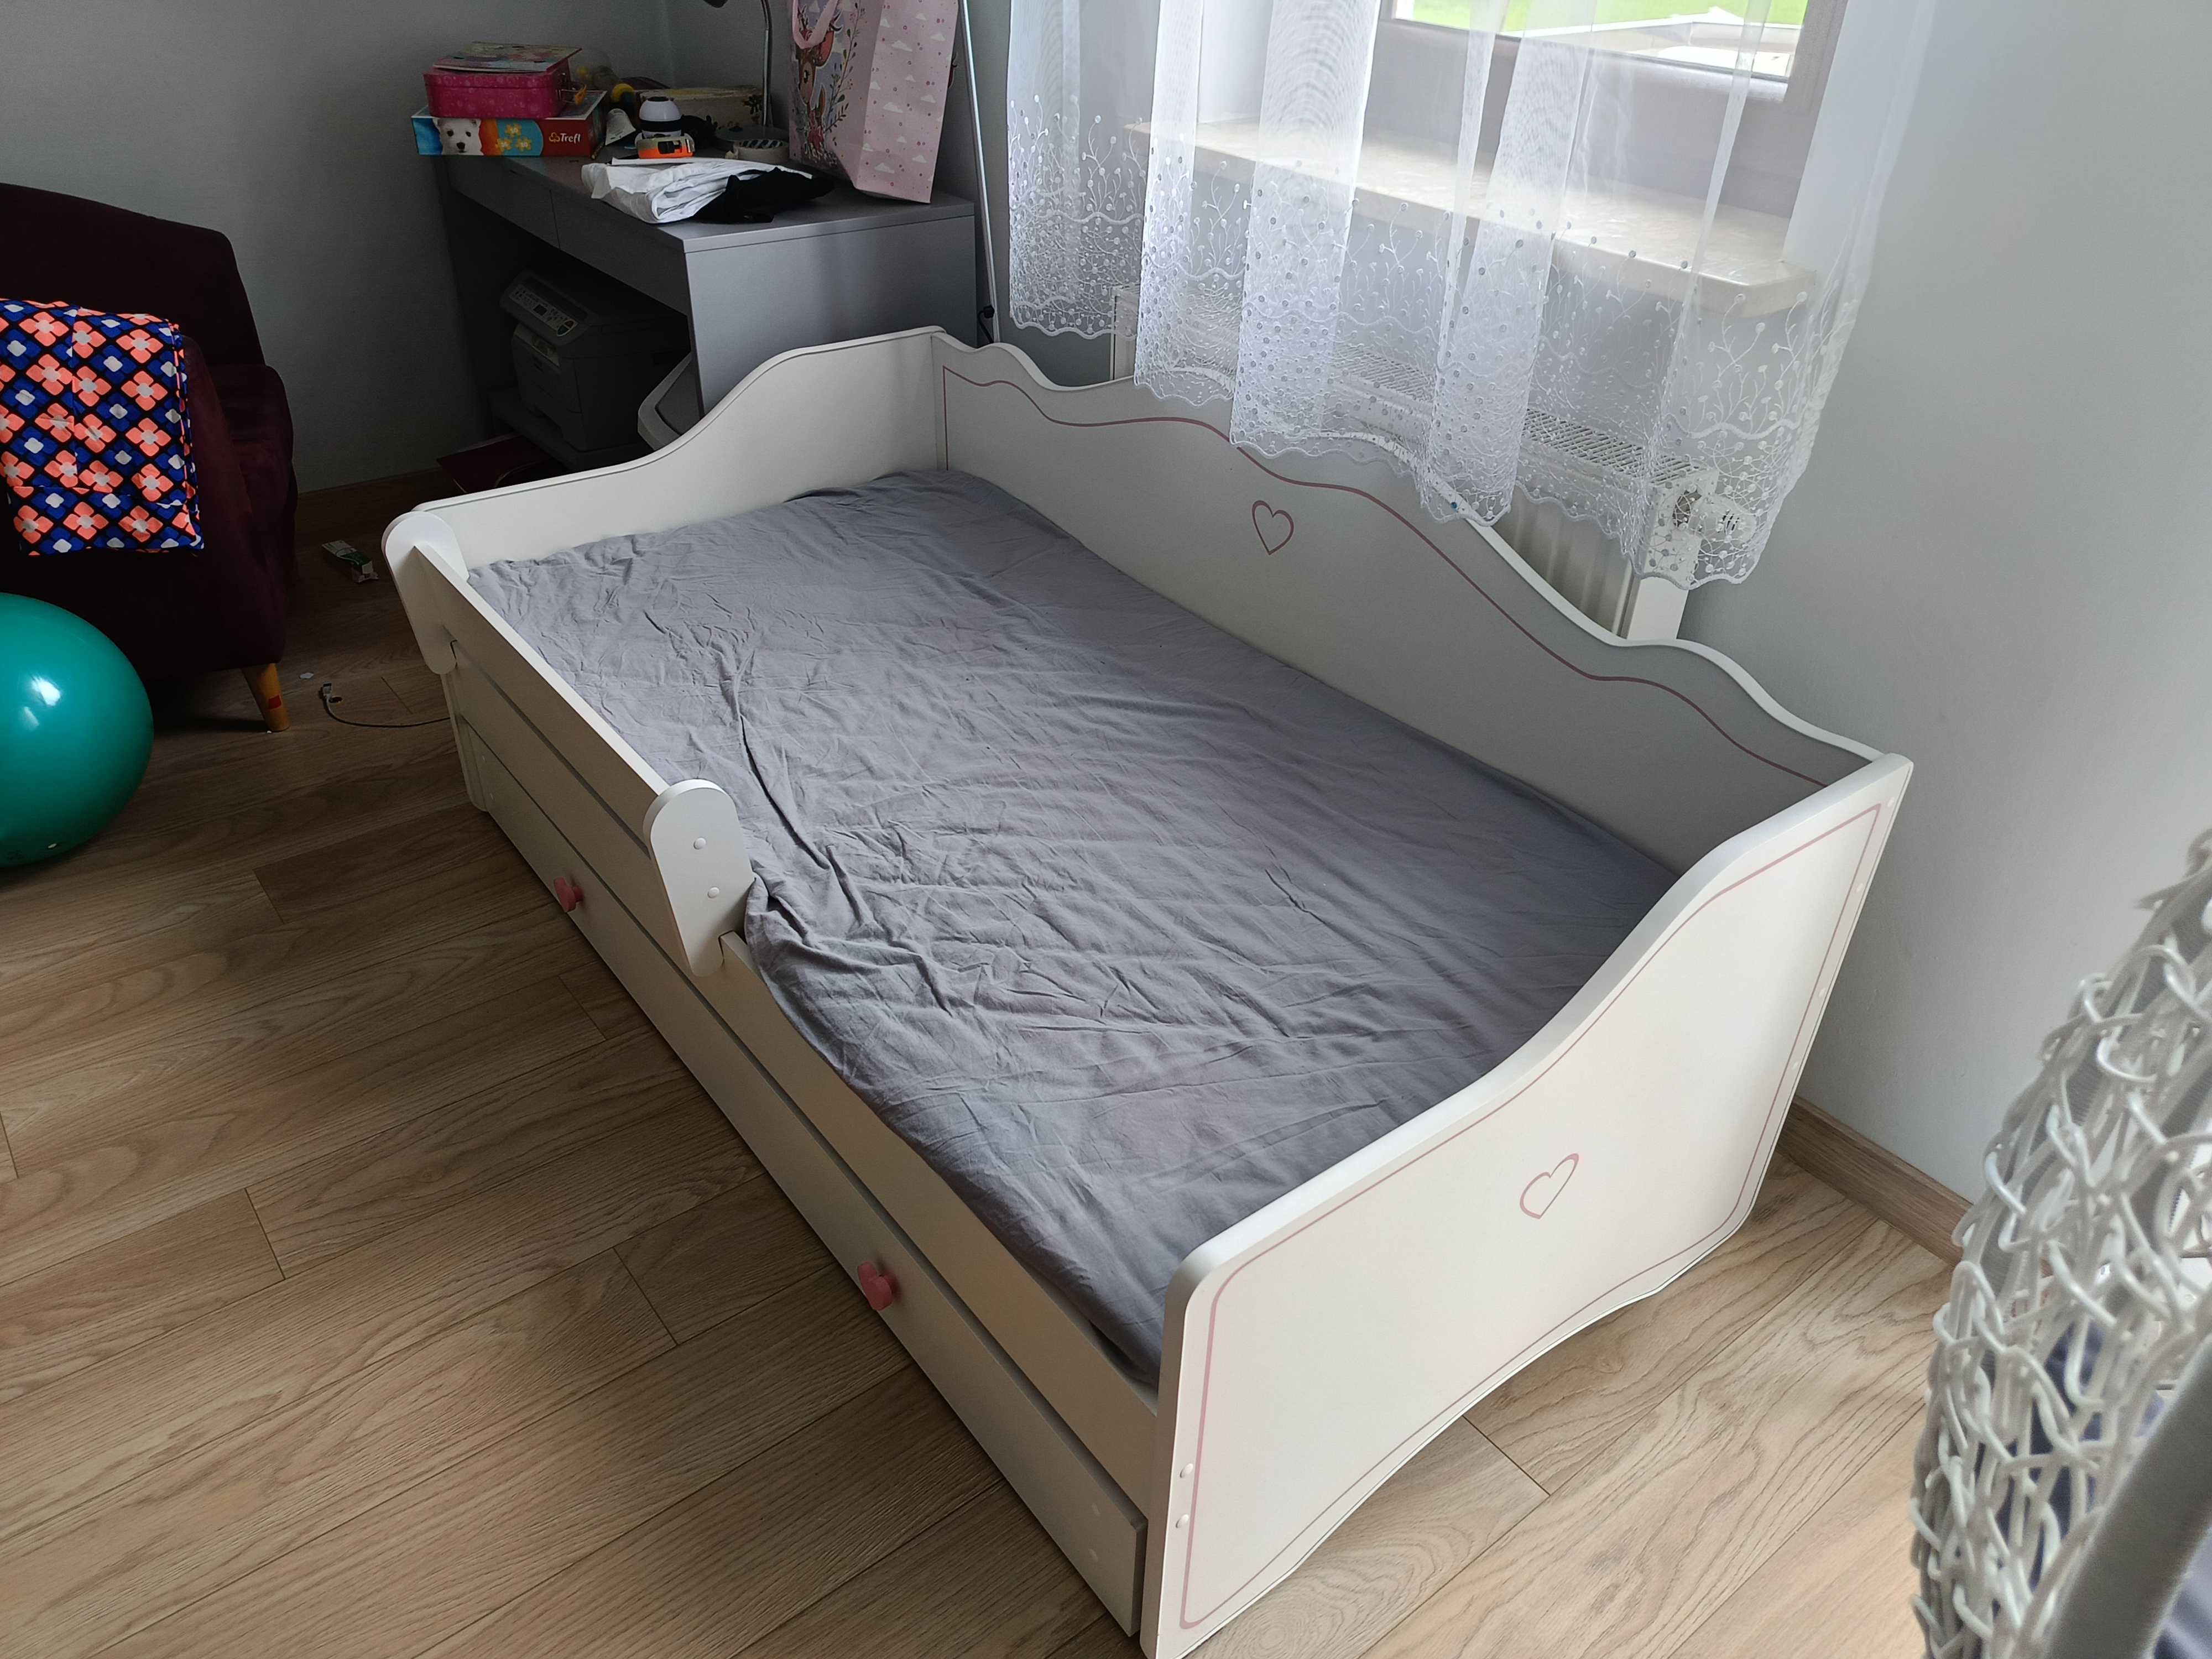 Łóżko dla dziewczynki z materacem strefowym. Nowe